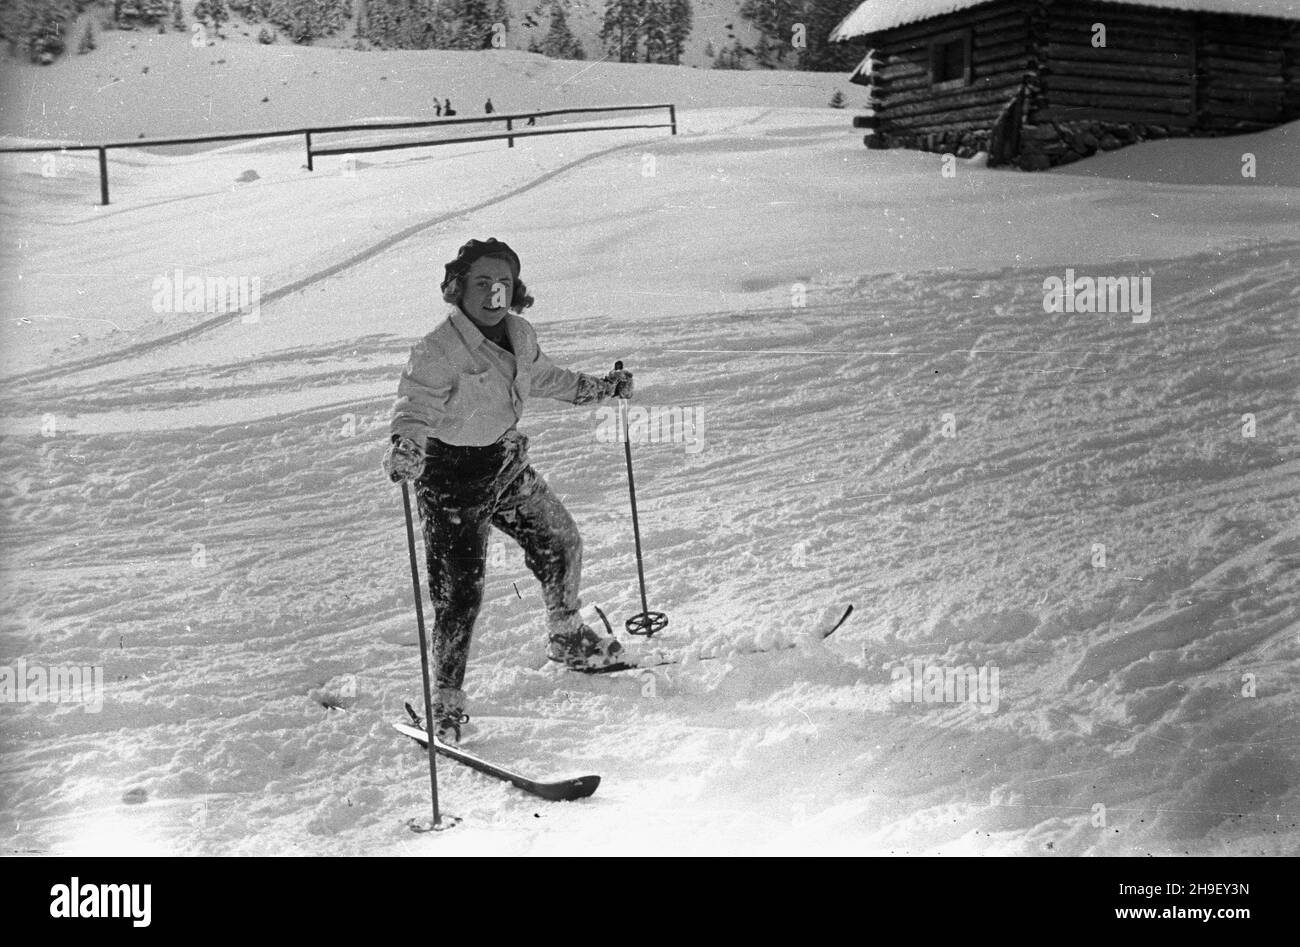 Zakopane, 1947-12. Narciarka w KuŸnicach. bb/gr  PAP    Dok³adny dzieñ wydarzenia nieustalony.      Zakopane, Dec. 1947. A skier in Kuznice.  bb/gr Stock Photo